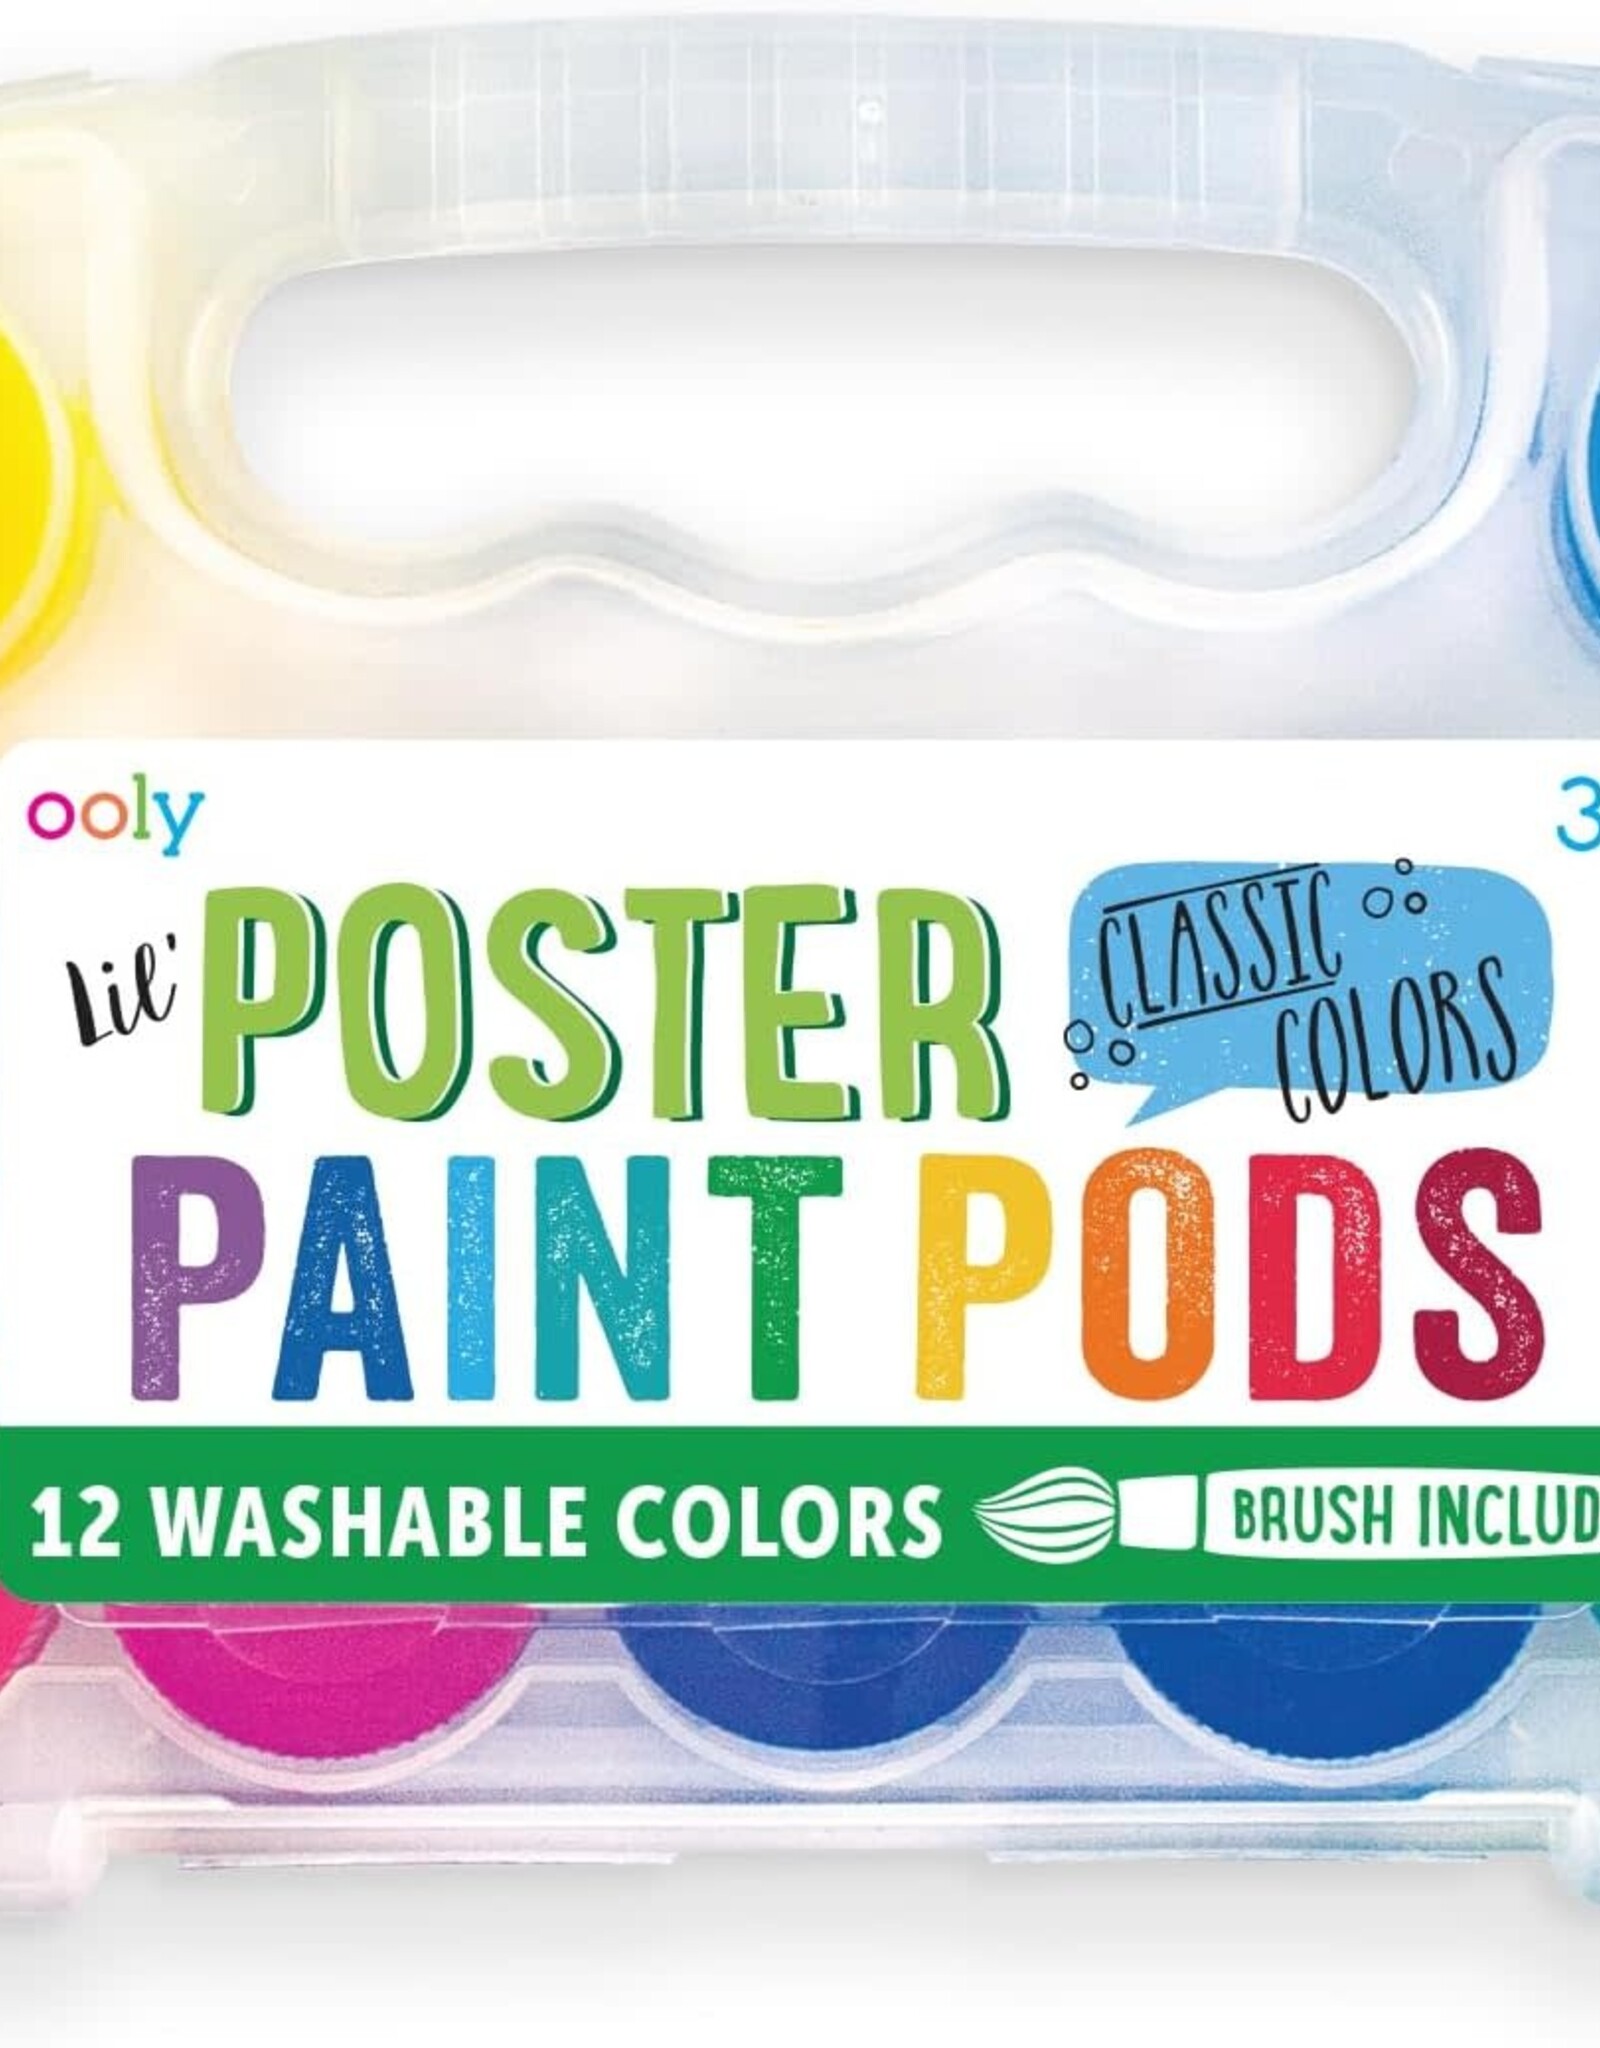 Lil' Paint Pods Poster Paints - Classic Colors